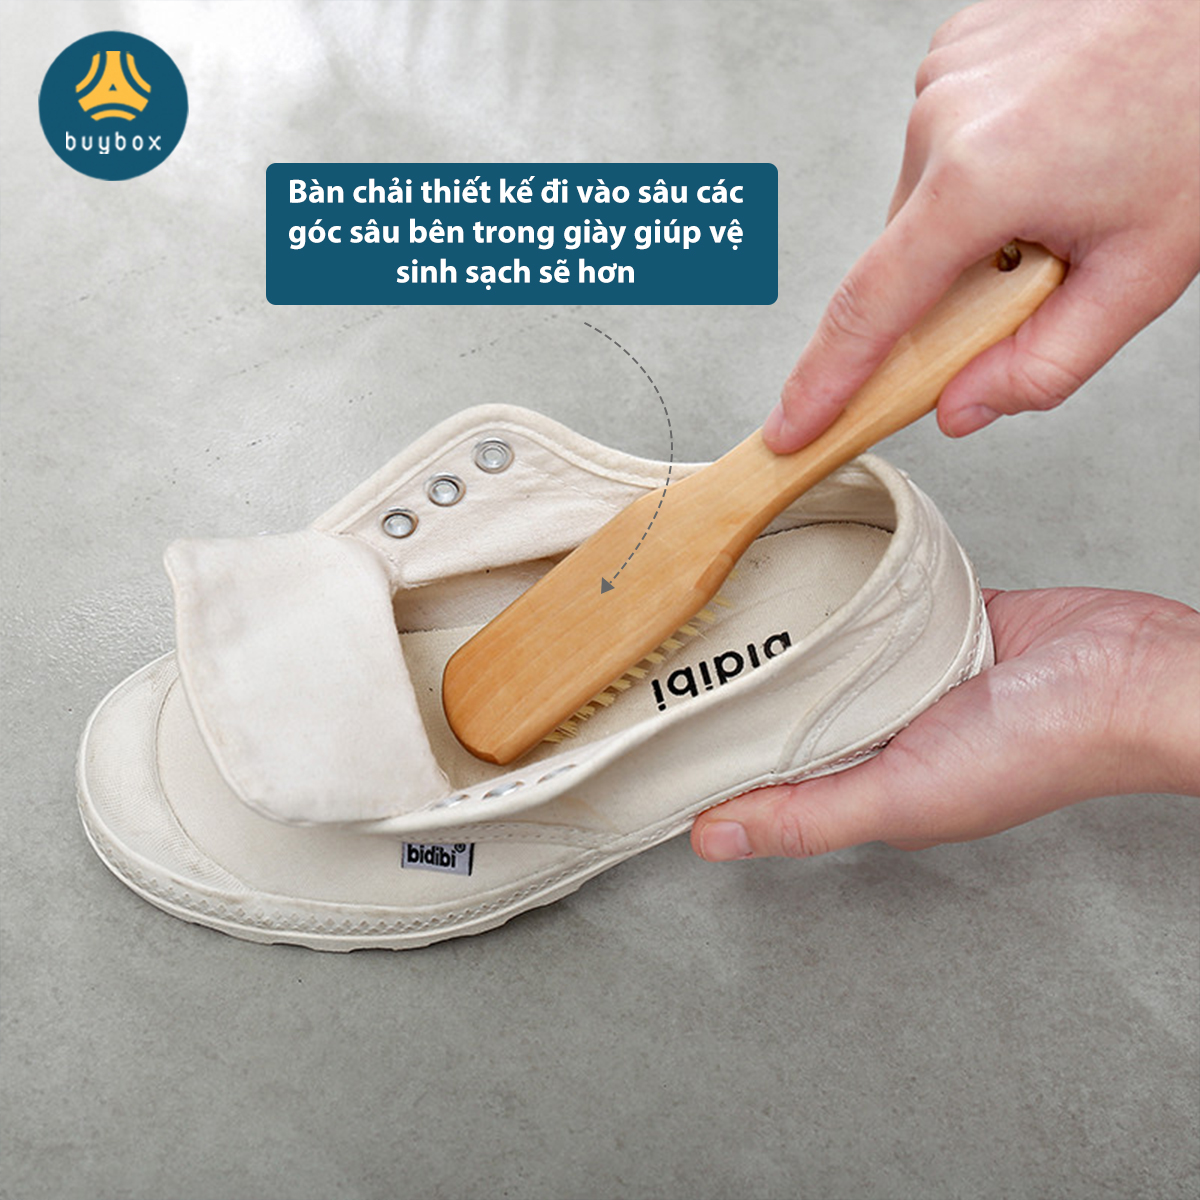 Bàn chải sợi nhựa vệ sinh quần áo, giày dép không gây xước về mặt vệ sinh - Buybox - BBPK241